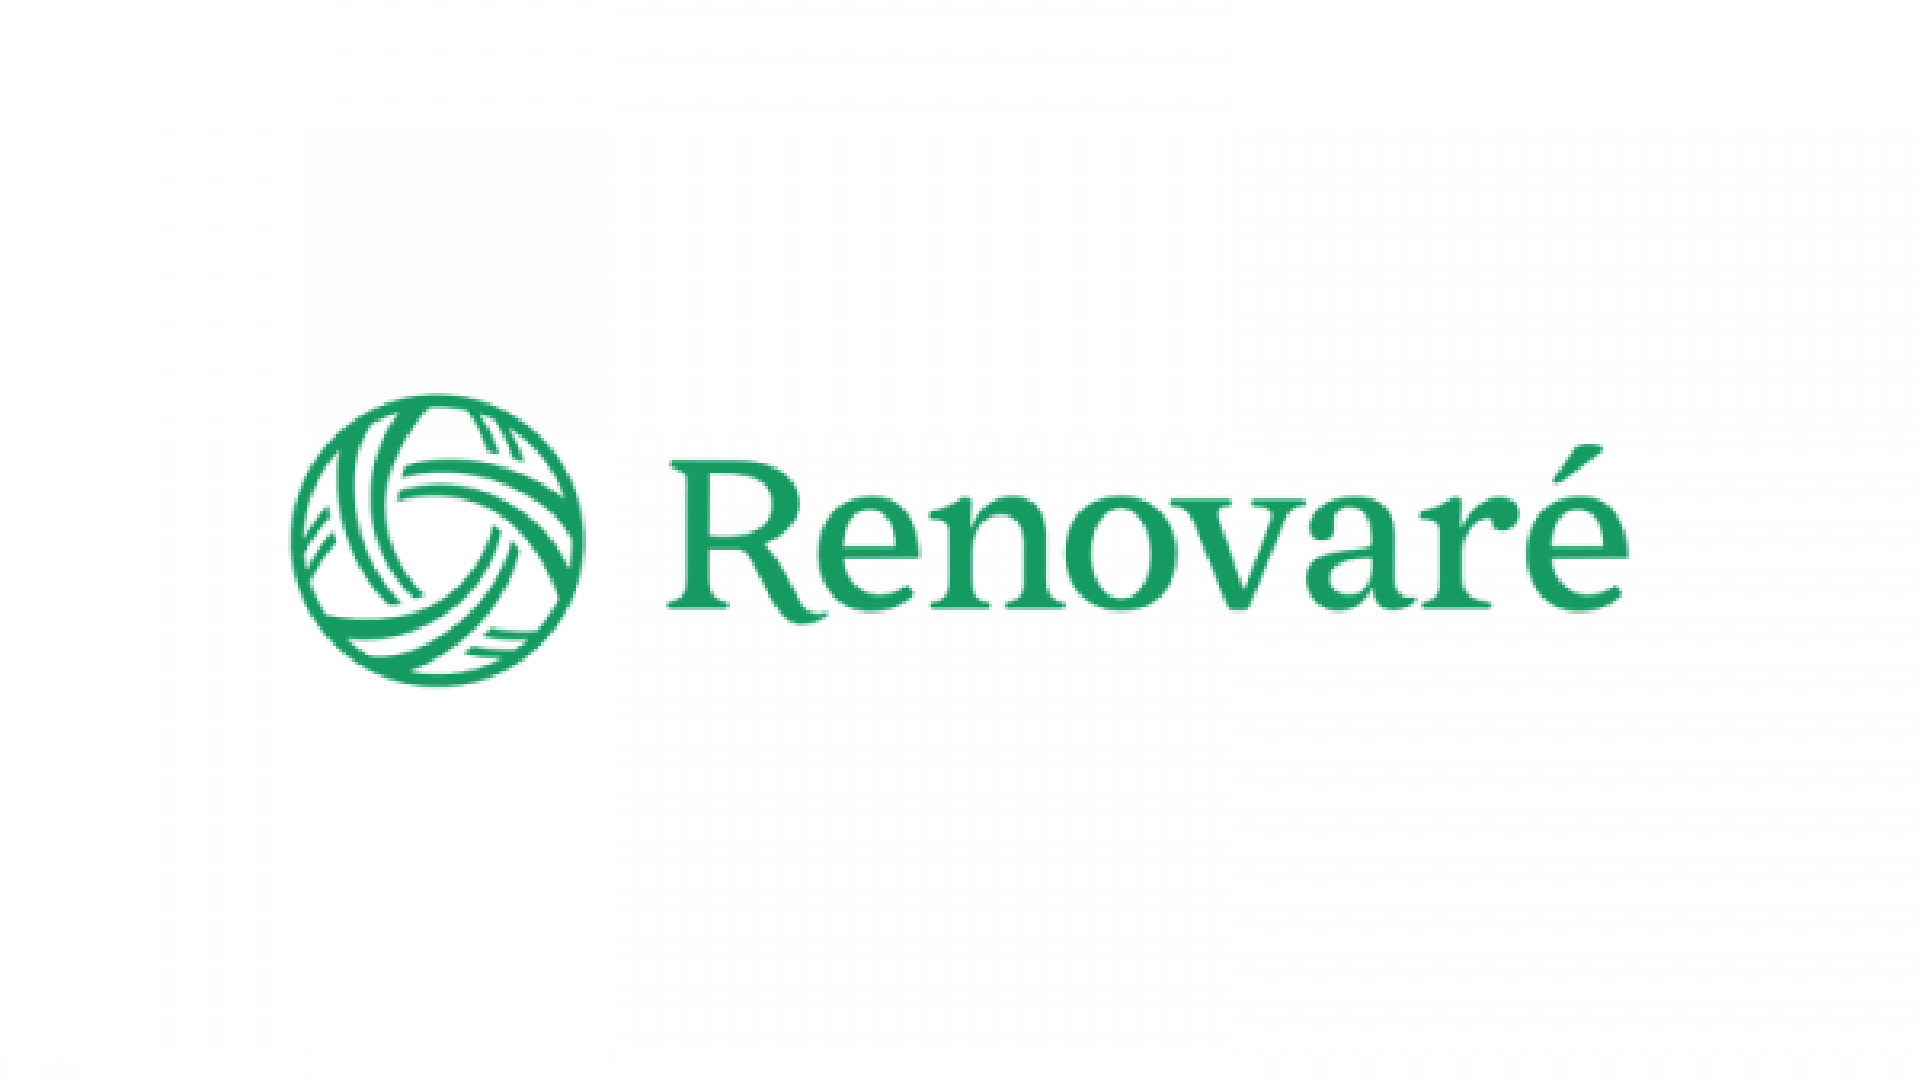 Renovare logo